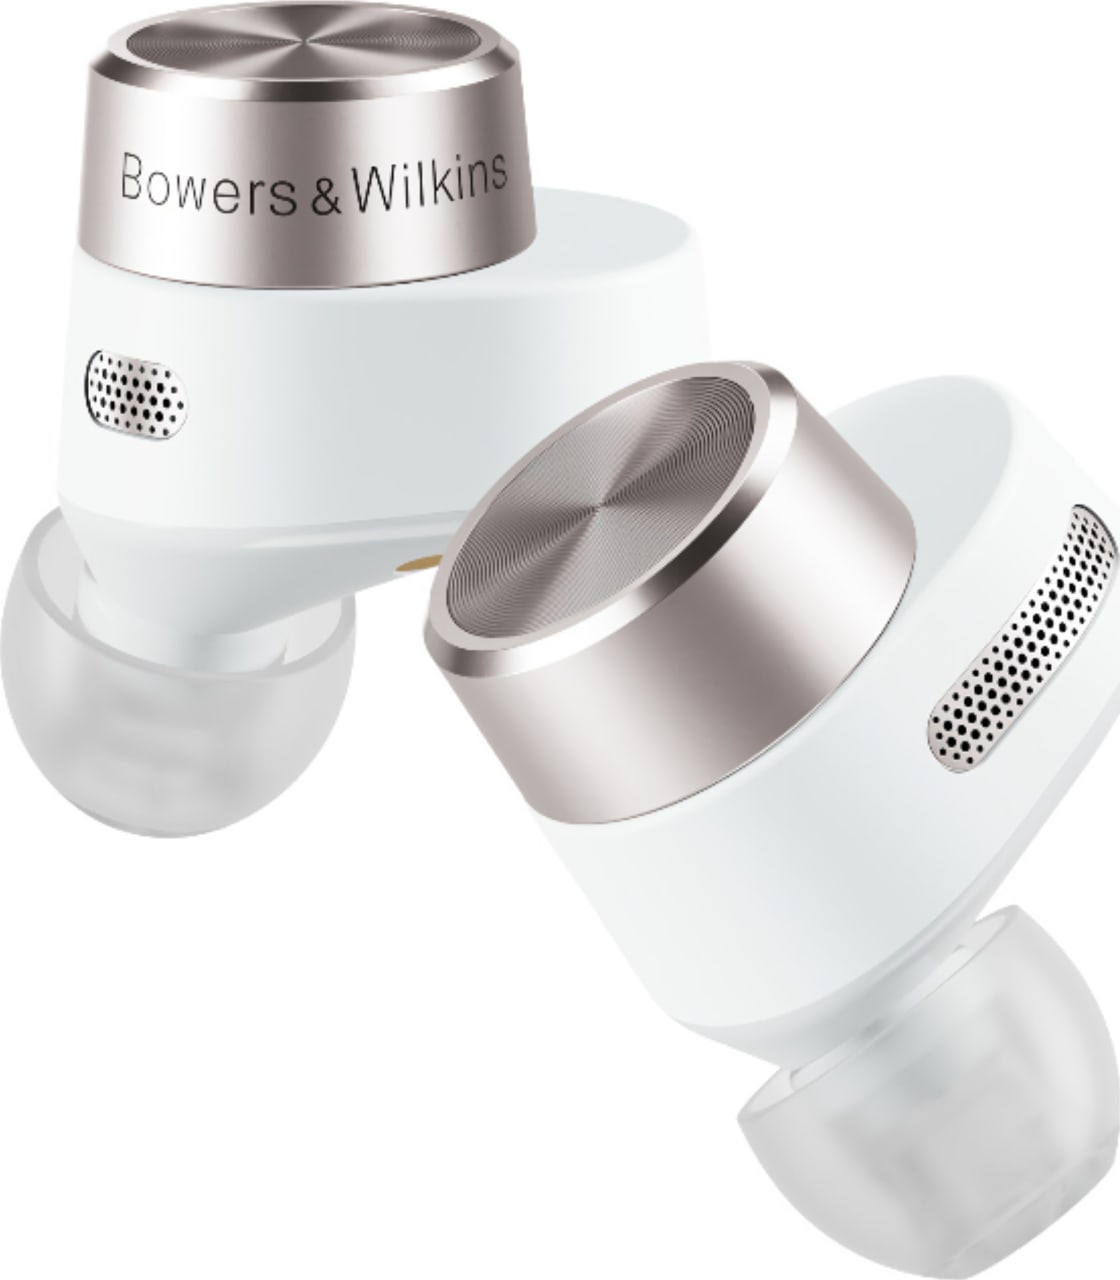 Blanco Auriculares inalámbricos - Bowers & Wilkins PI5 - Bluetooth - True Wireless - Cancelación de ruido.1